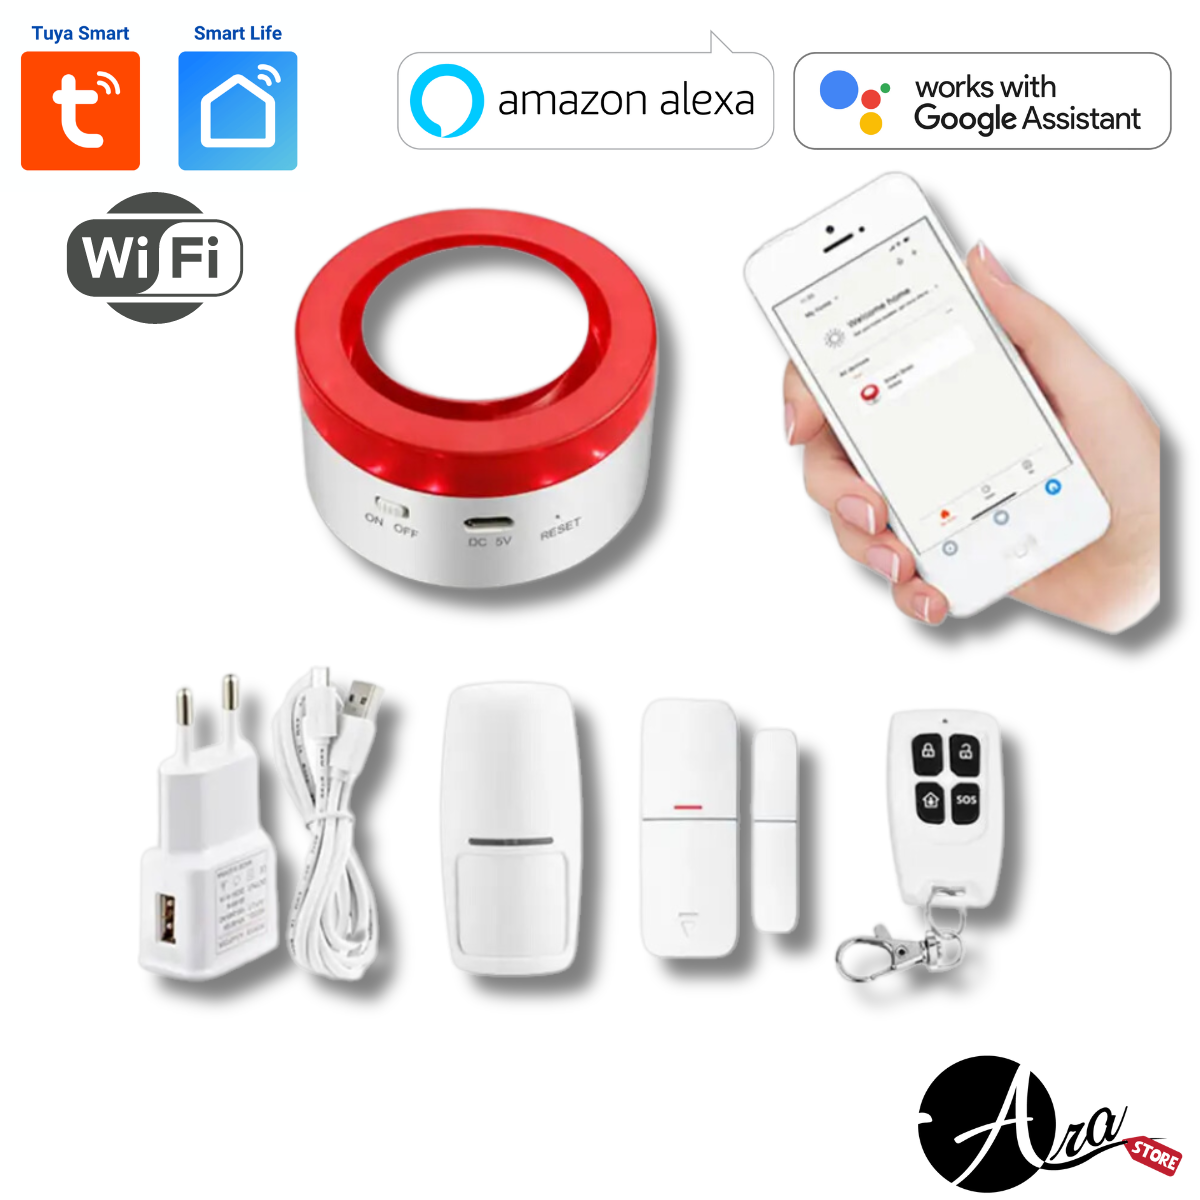 Alarma inteligente Wifi Tuya Smart / Smart Life